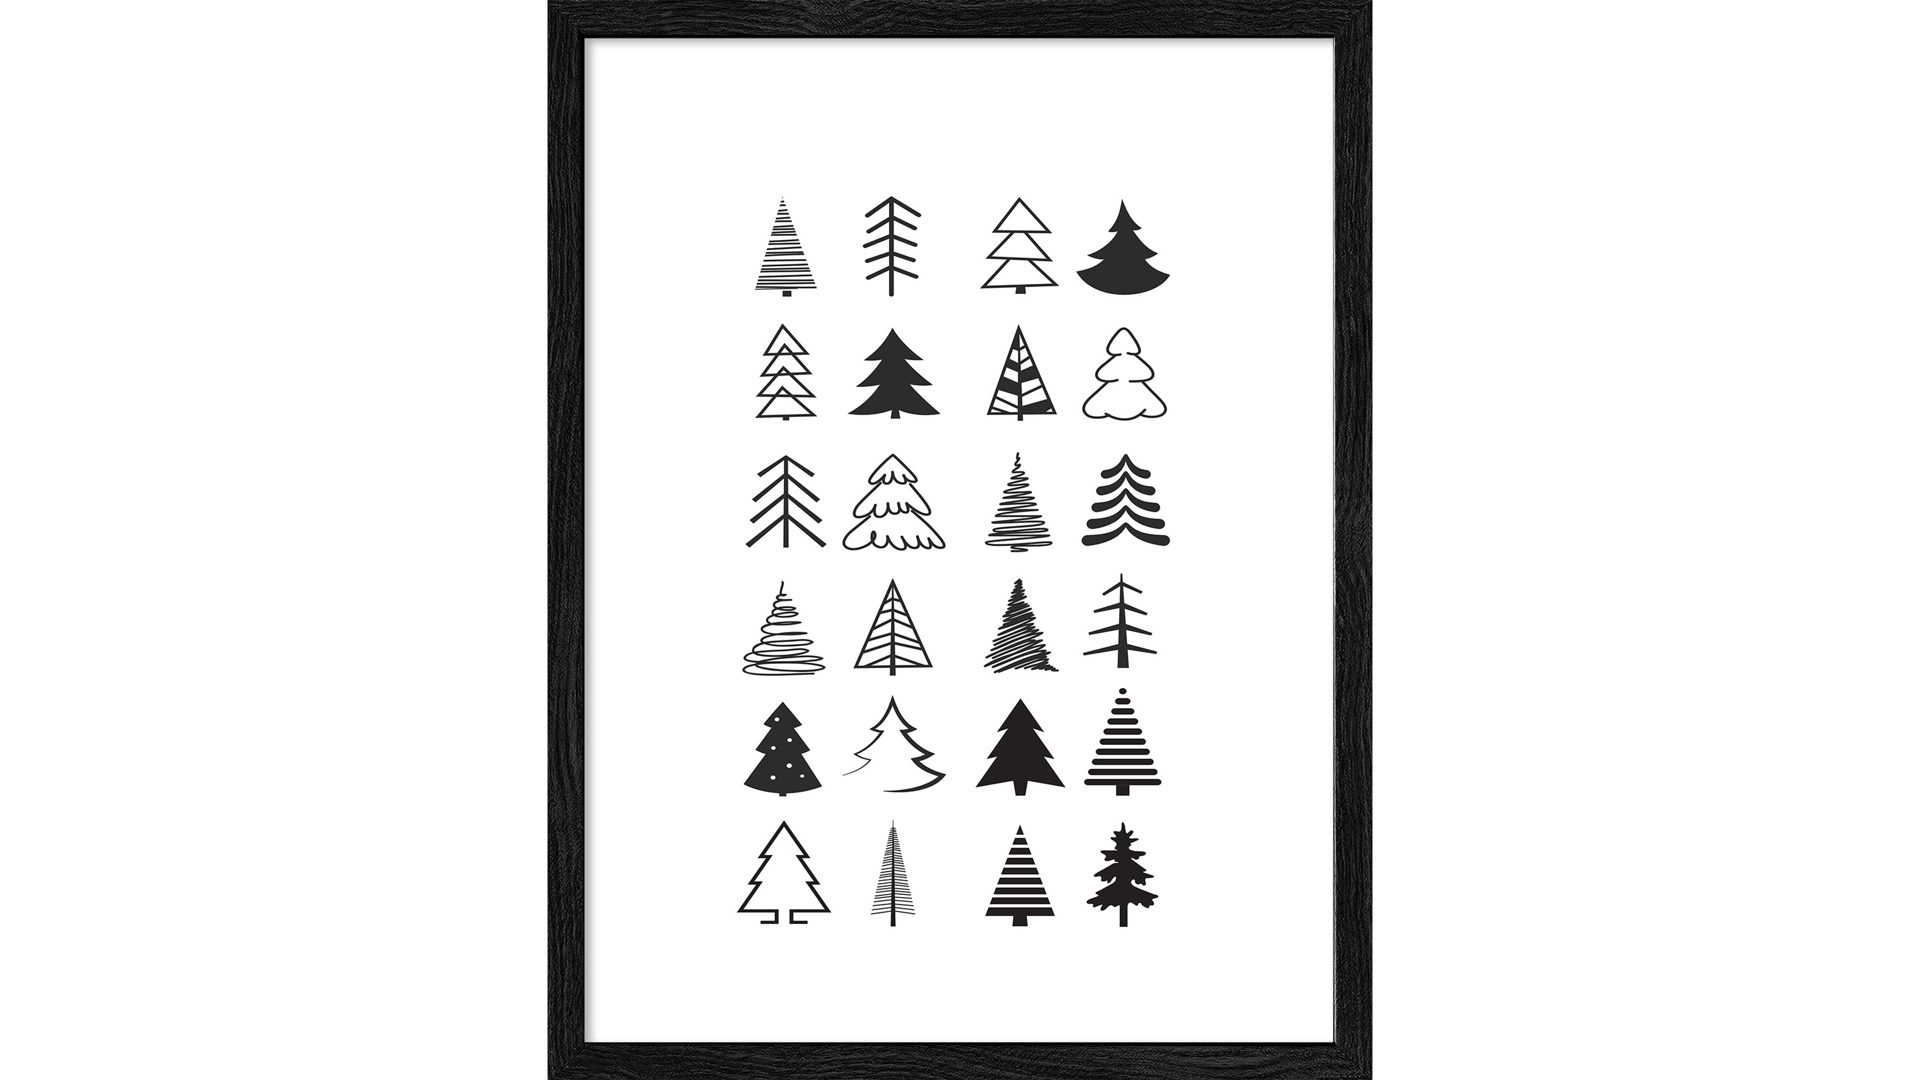 Kunstdruck Pro®art bilderpalette aus Karton / Papier / Pappe in Weiß PRO®ART Kunstdruck Christmas 3 Weiß & Schwarz - ca. 33 x 43 cm